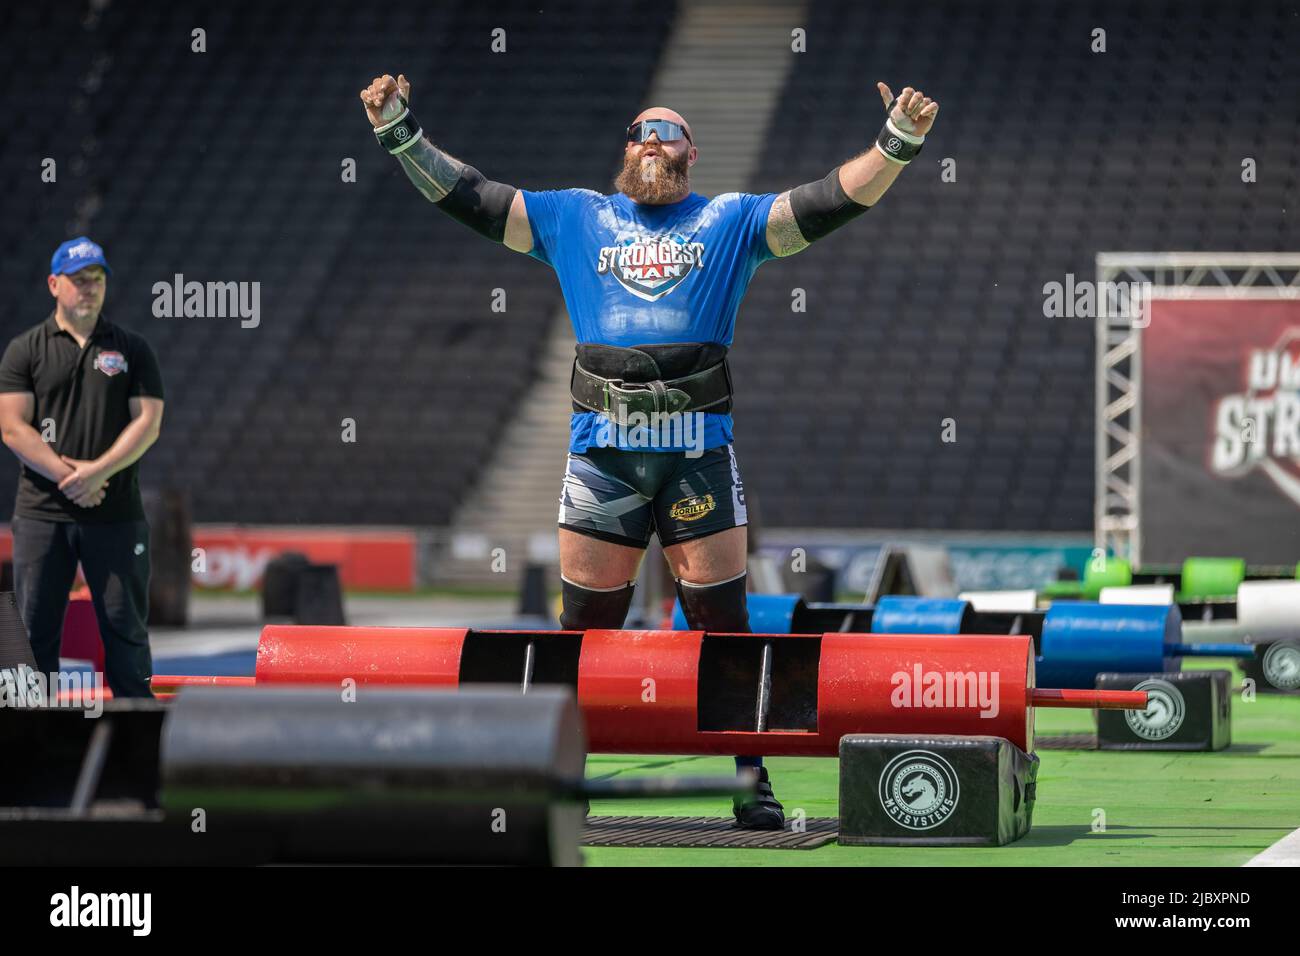 Ultimate Strongman UK 2022 Stock Photo